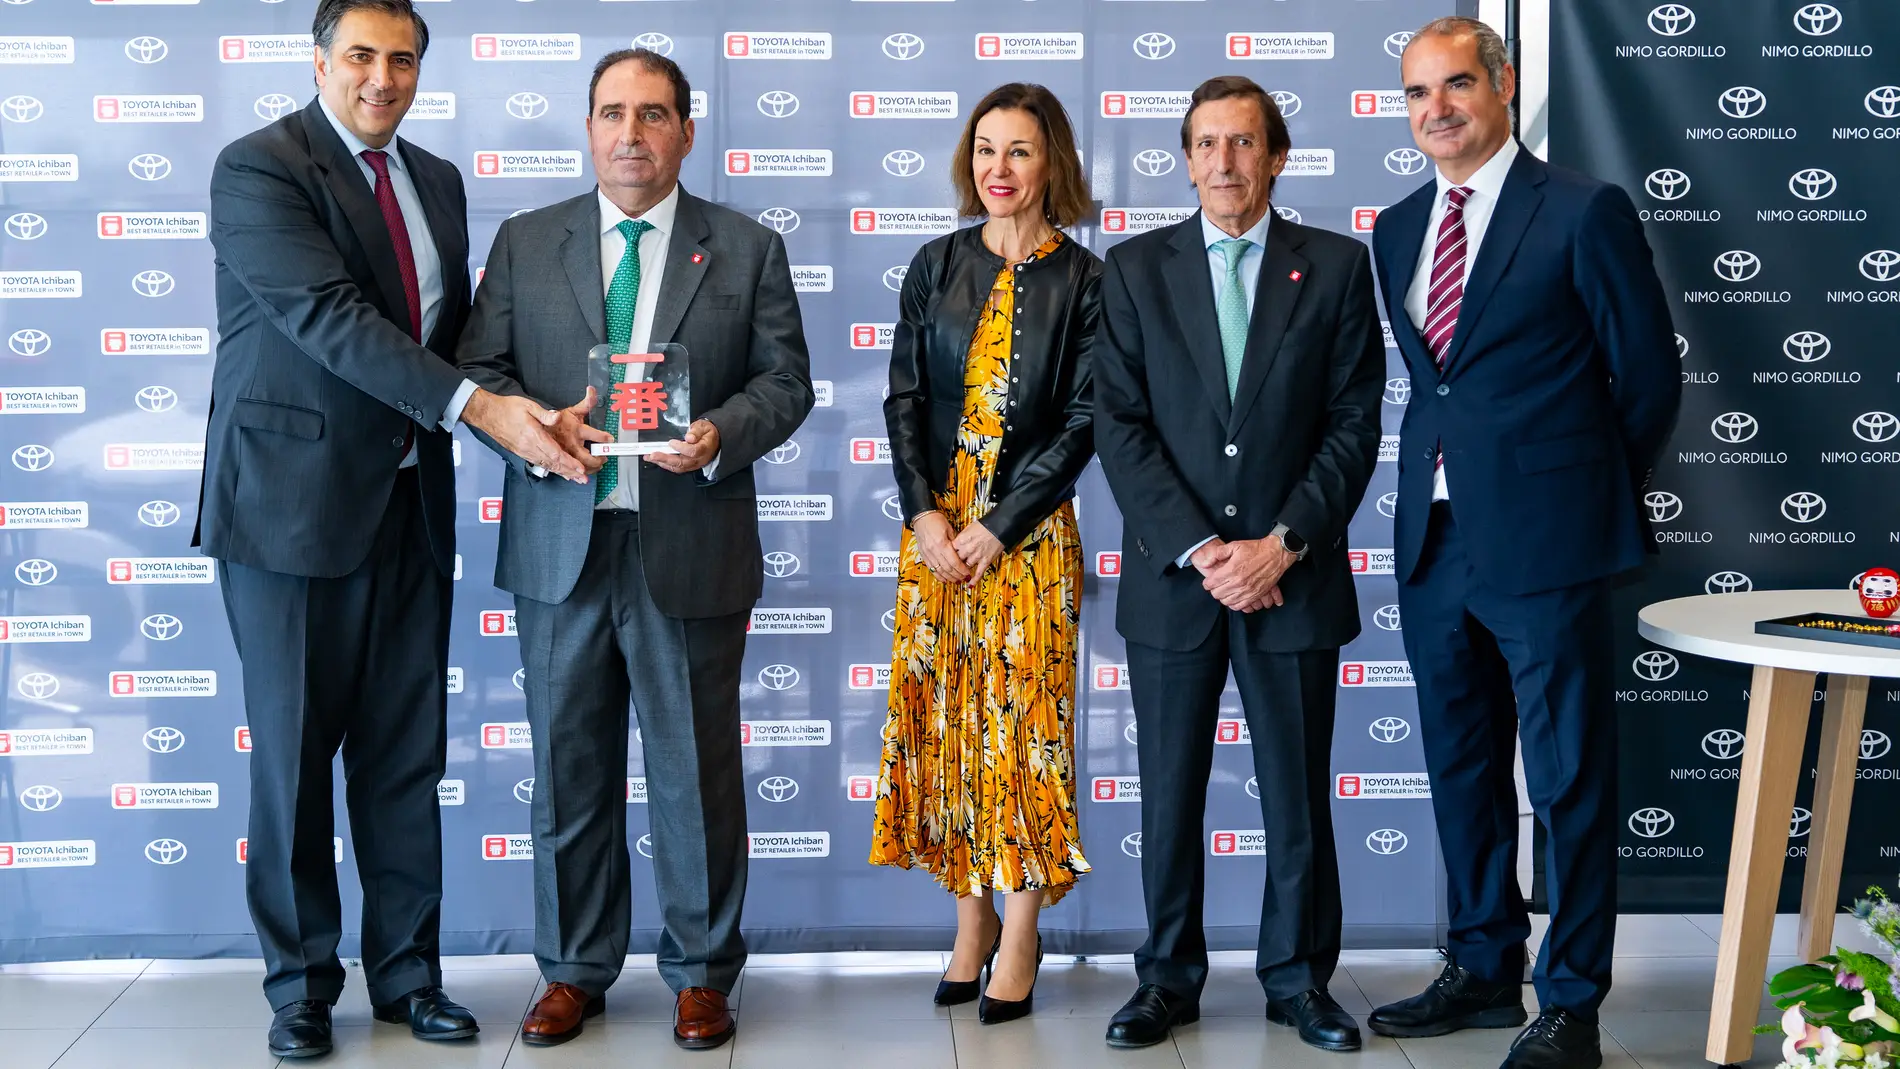 Toyota Nimo Gordillo gana el Premio Ichiban de Toyota España por ofrecer una experiencia excepcional a sus clientes